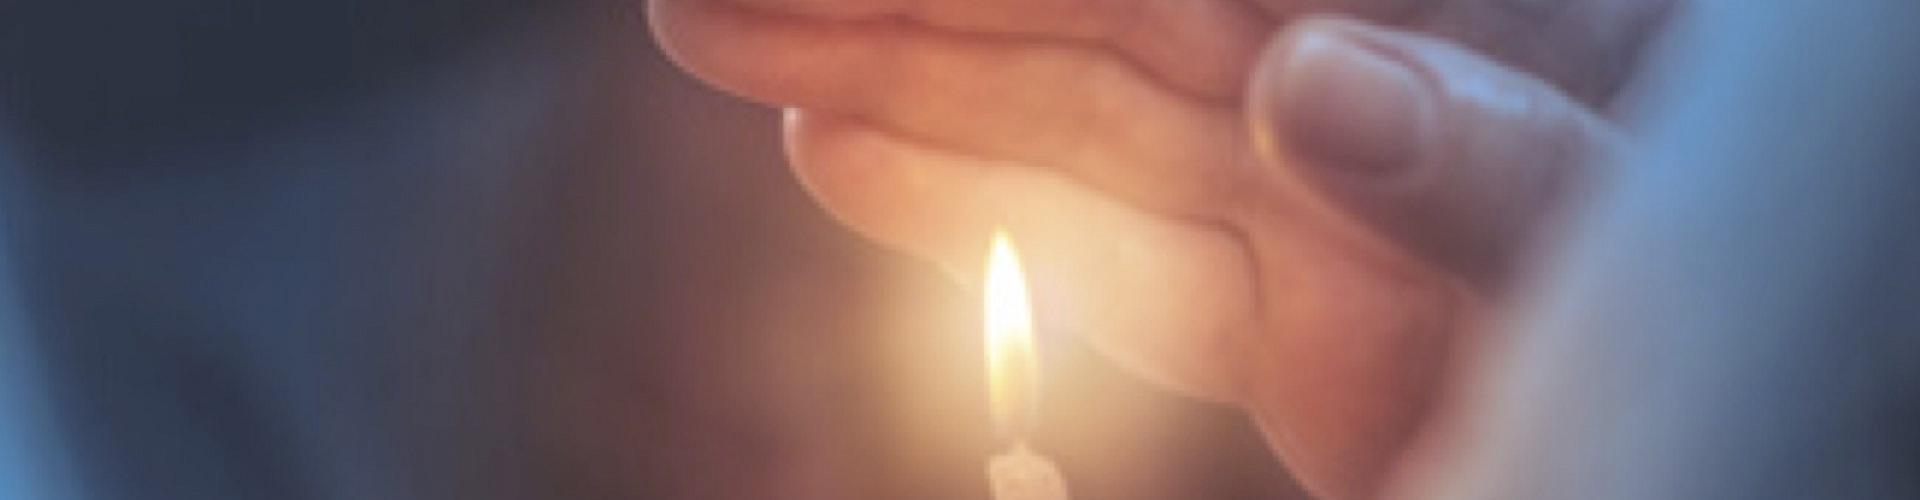 Soluciones Entidades Religiosas cabecera - Mano agarrando una vela encendida - Caja Rural de Navarra